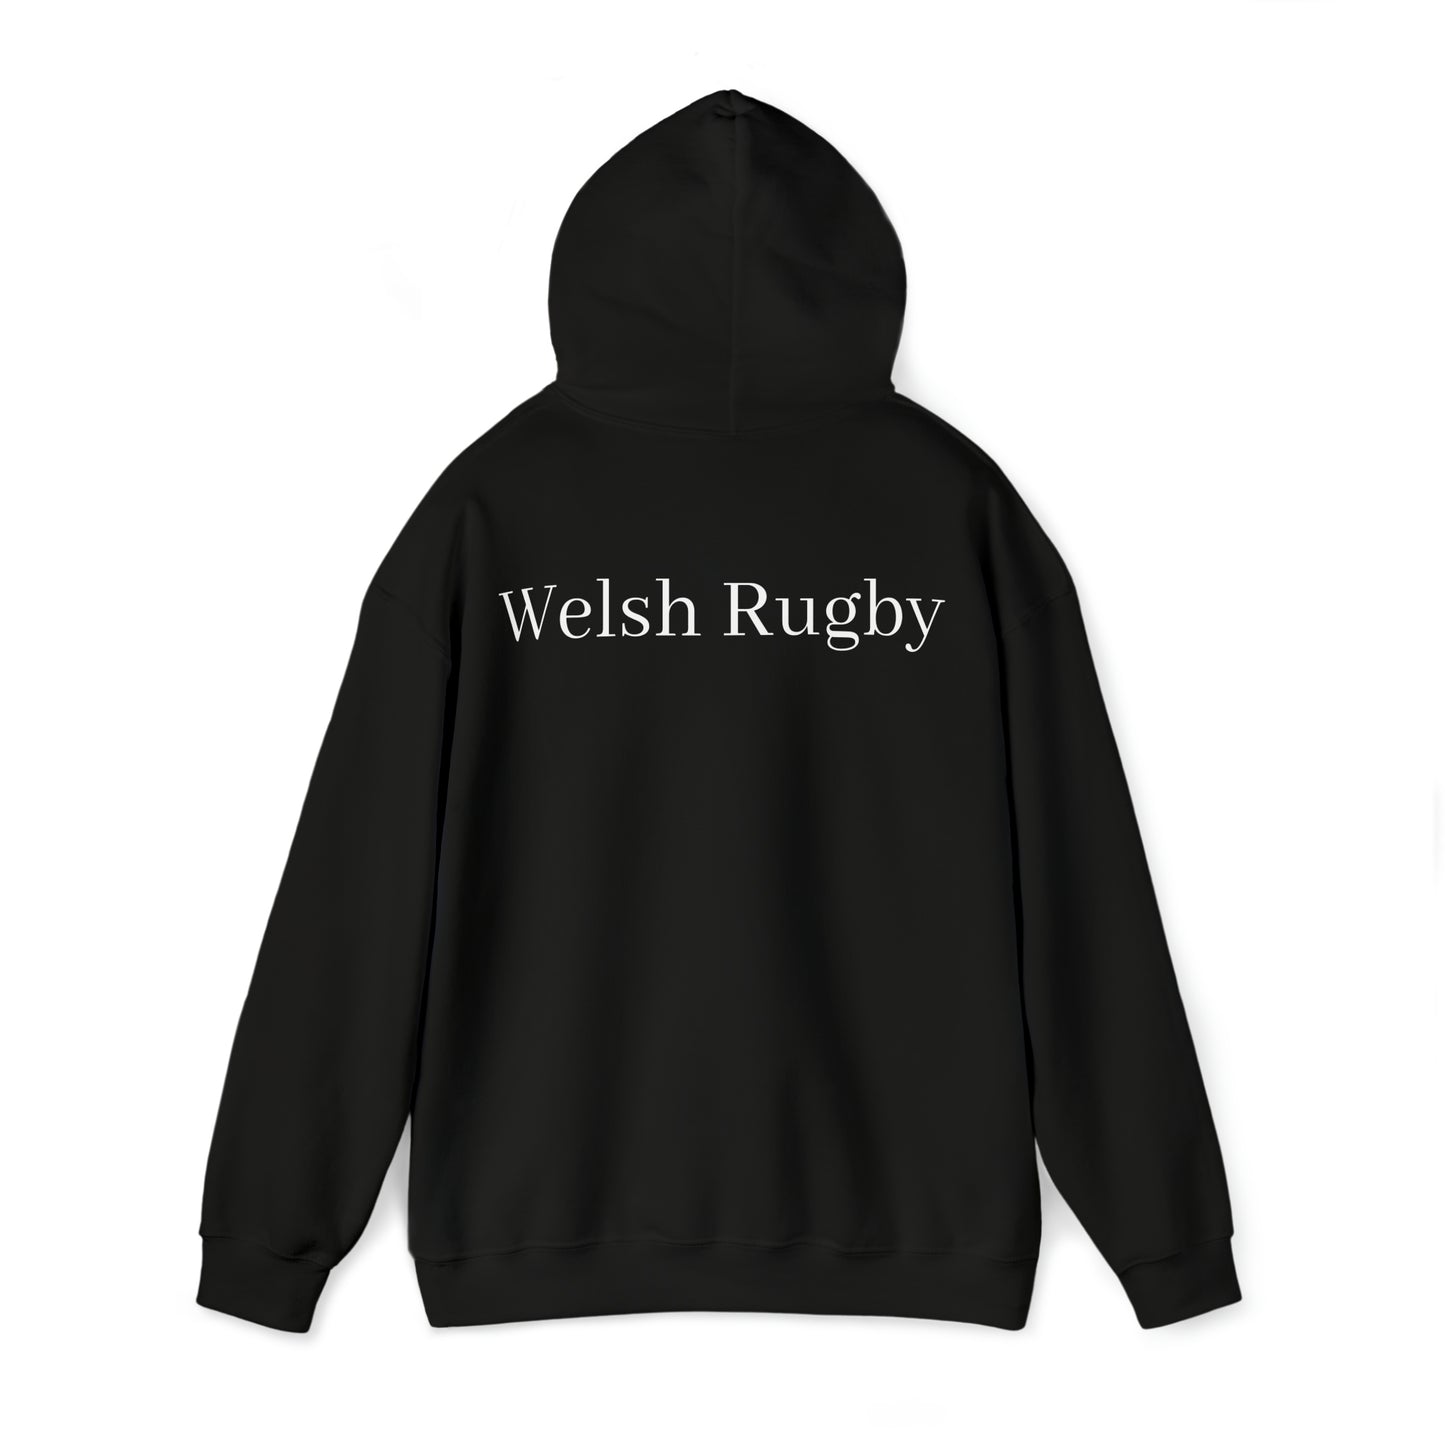 Welsh Dragon 2 - dark hoodies